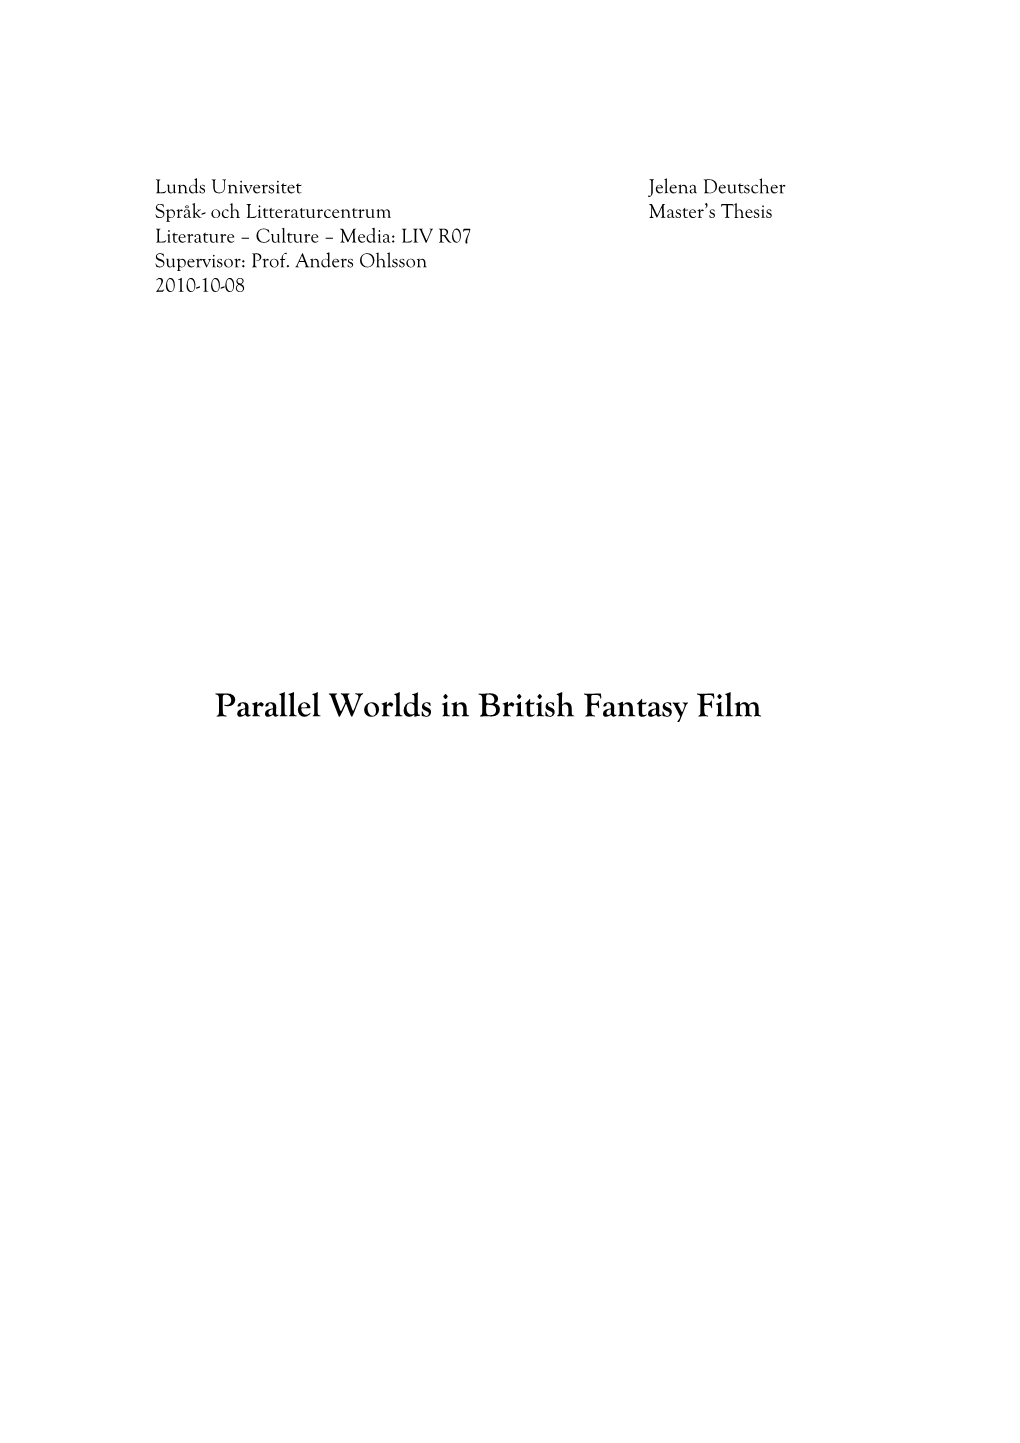 Parallel Worlds in British Fantasy Film